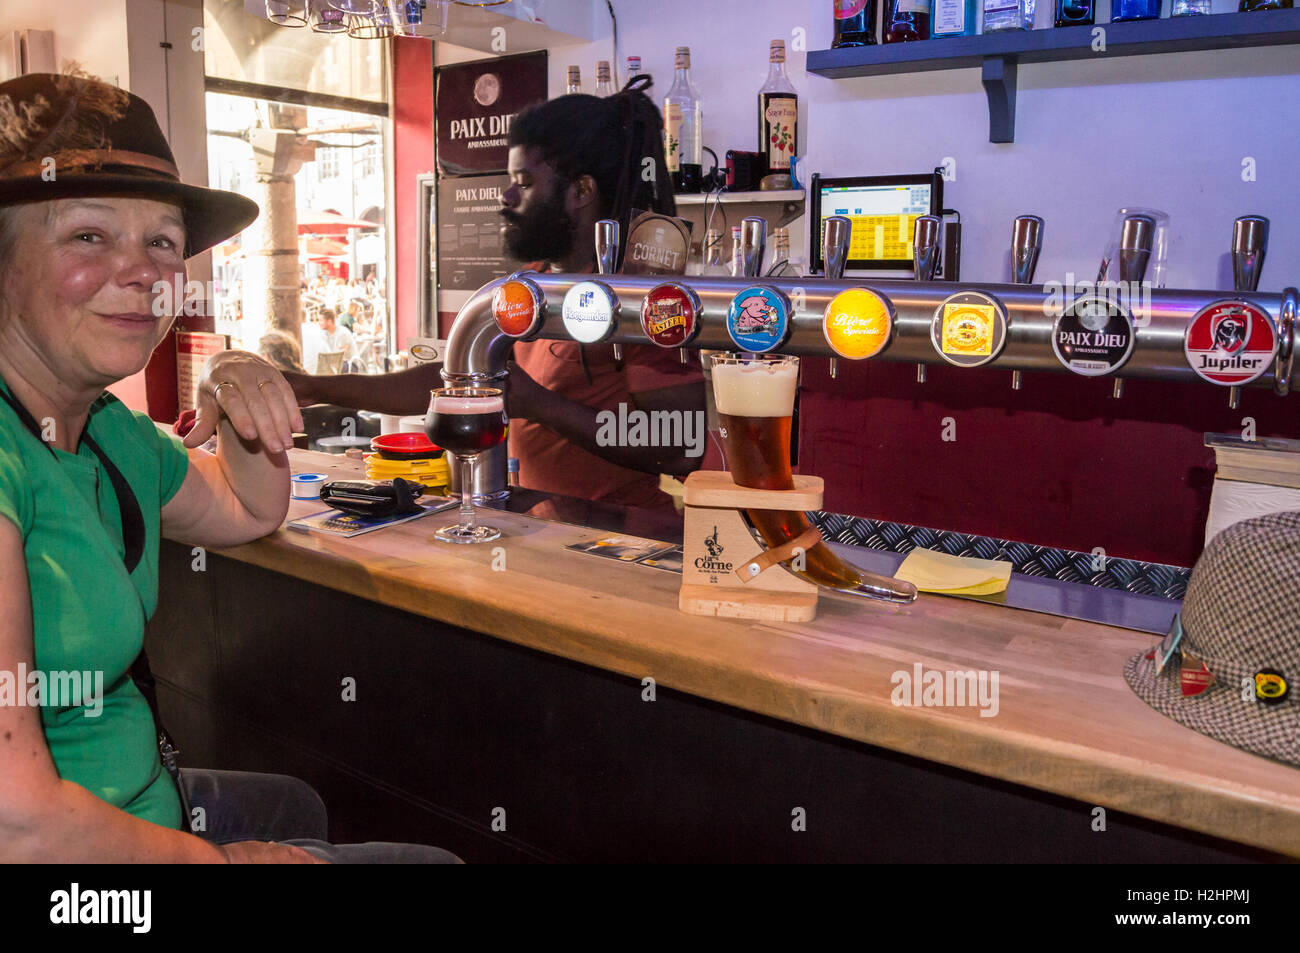 Un avvisatore acustico a forma di vetro La Corne du Bois des pendus birra in corona, Couleur Café bar, Place des Héros, Arras, Pas-de-Calais Hauts de France, Francia Foto Stock